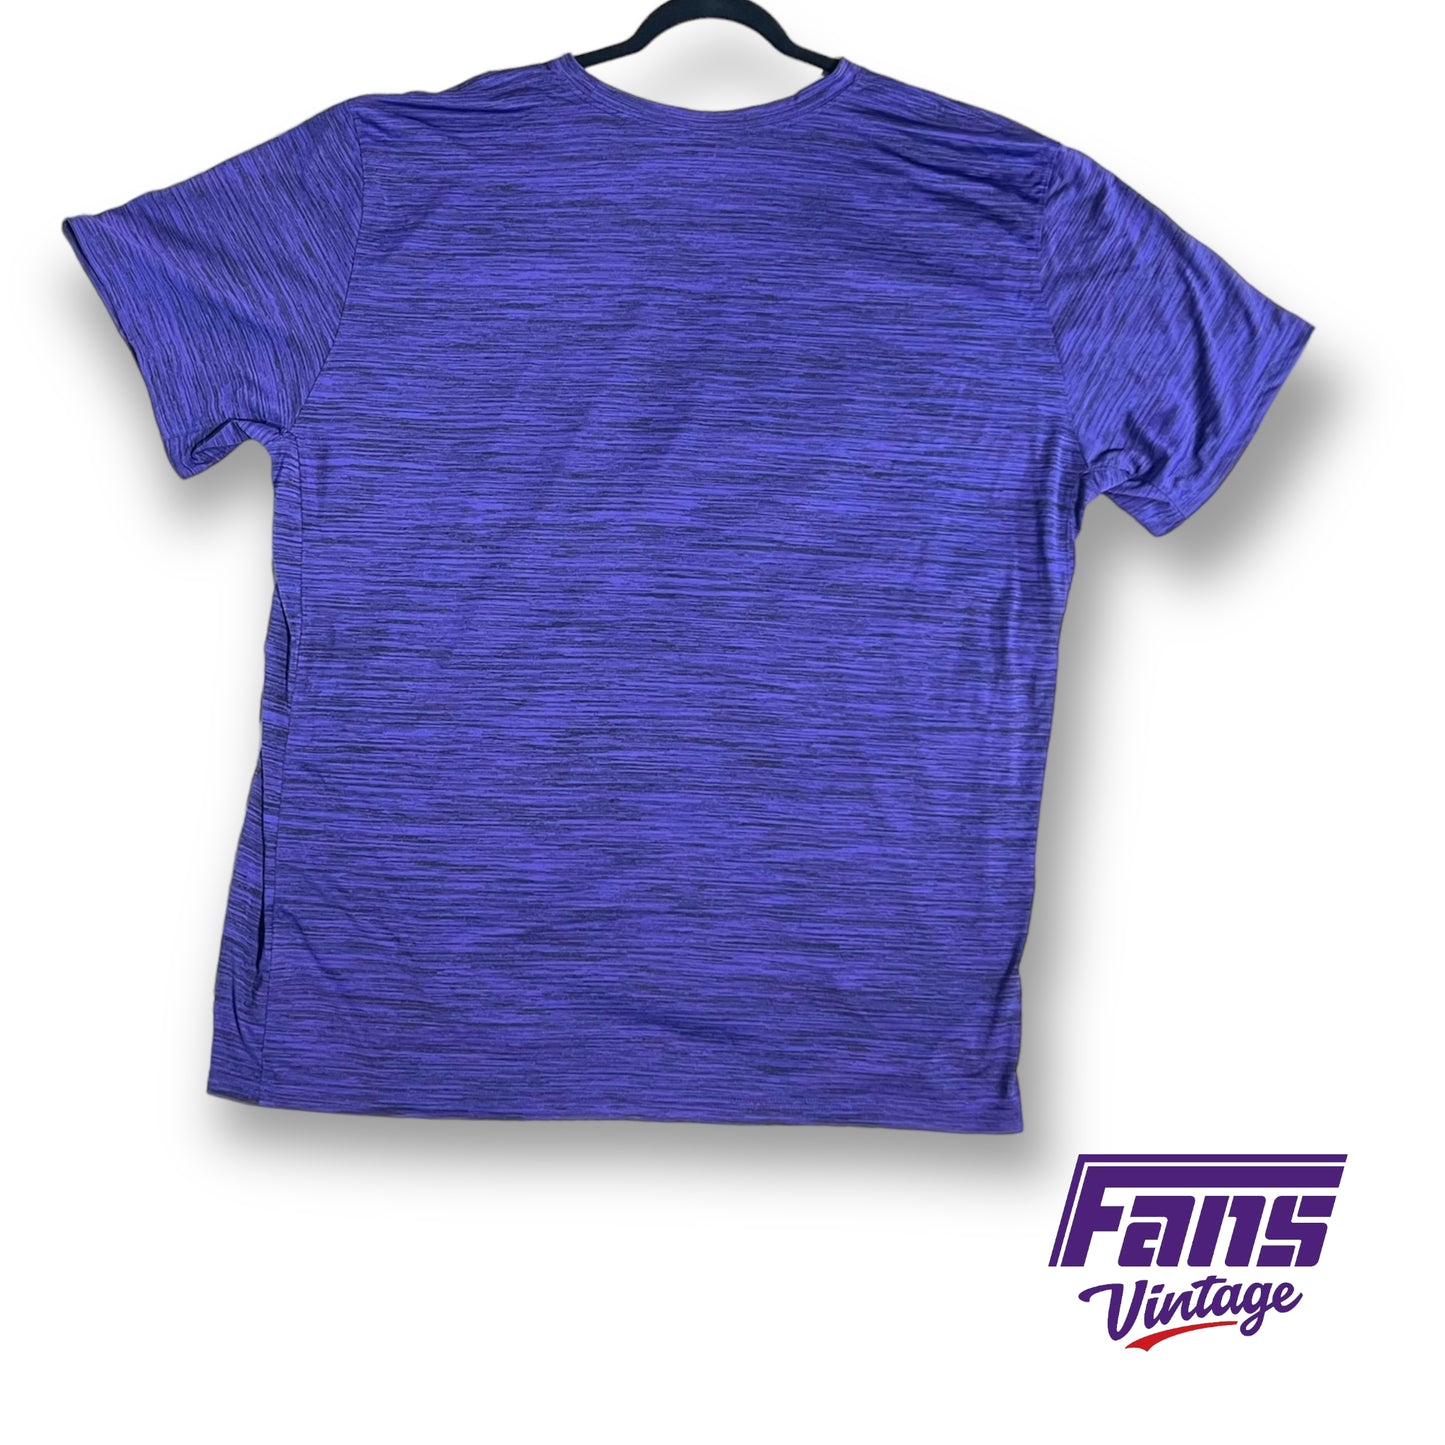 Premium Nike TCU team issued dri-fit t-shirt